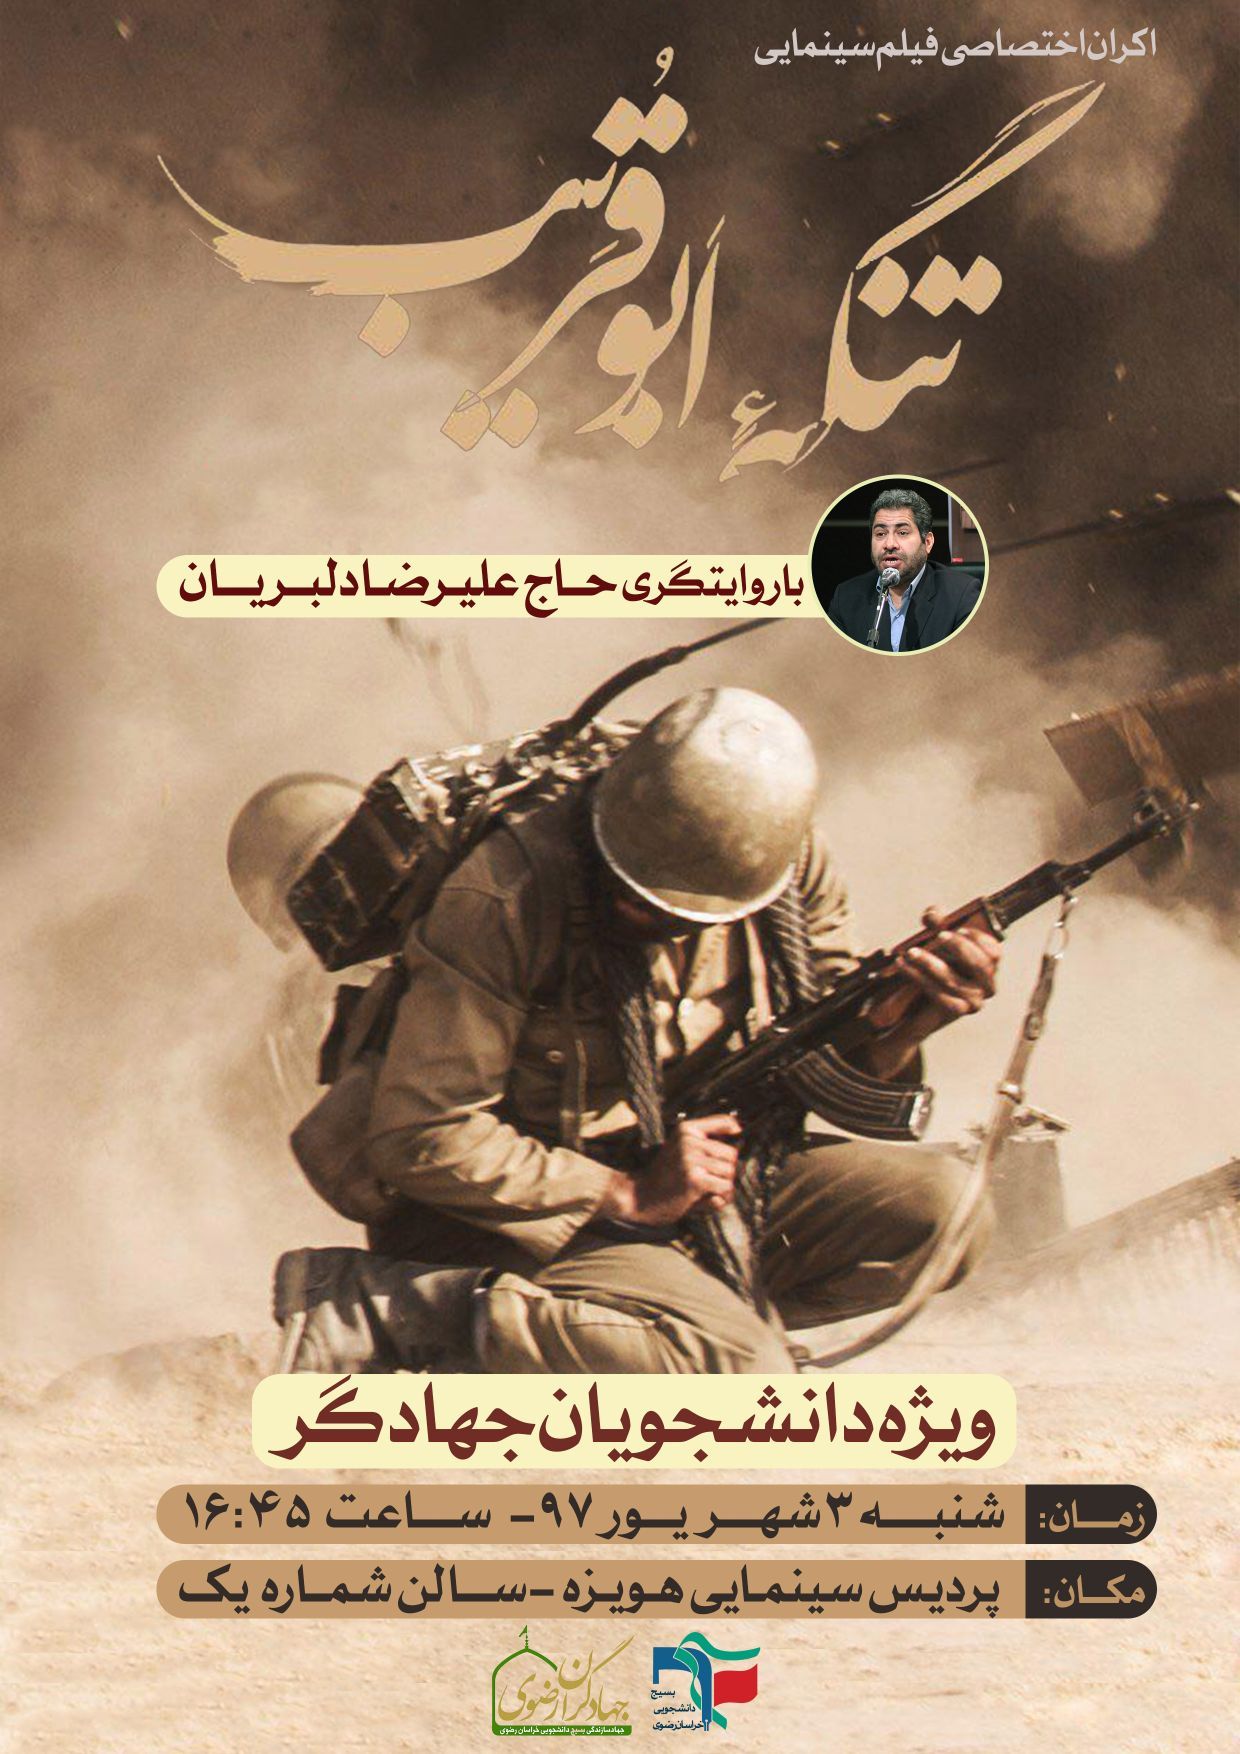 اکران «تنگه ابوقریب» برای دانشجویان جهادگر مشهدی